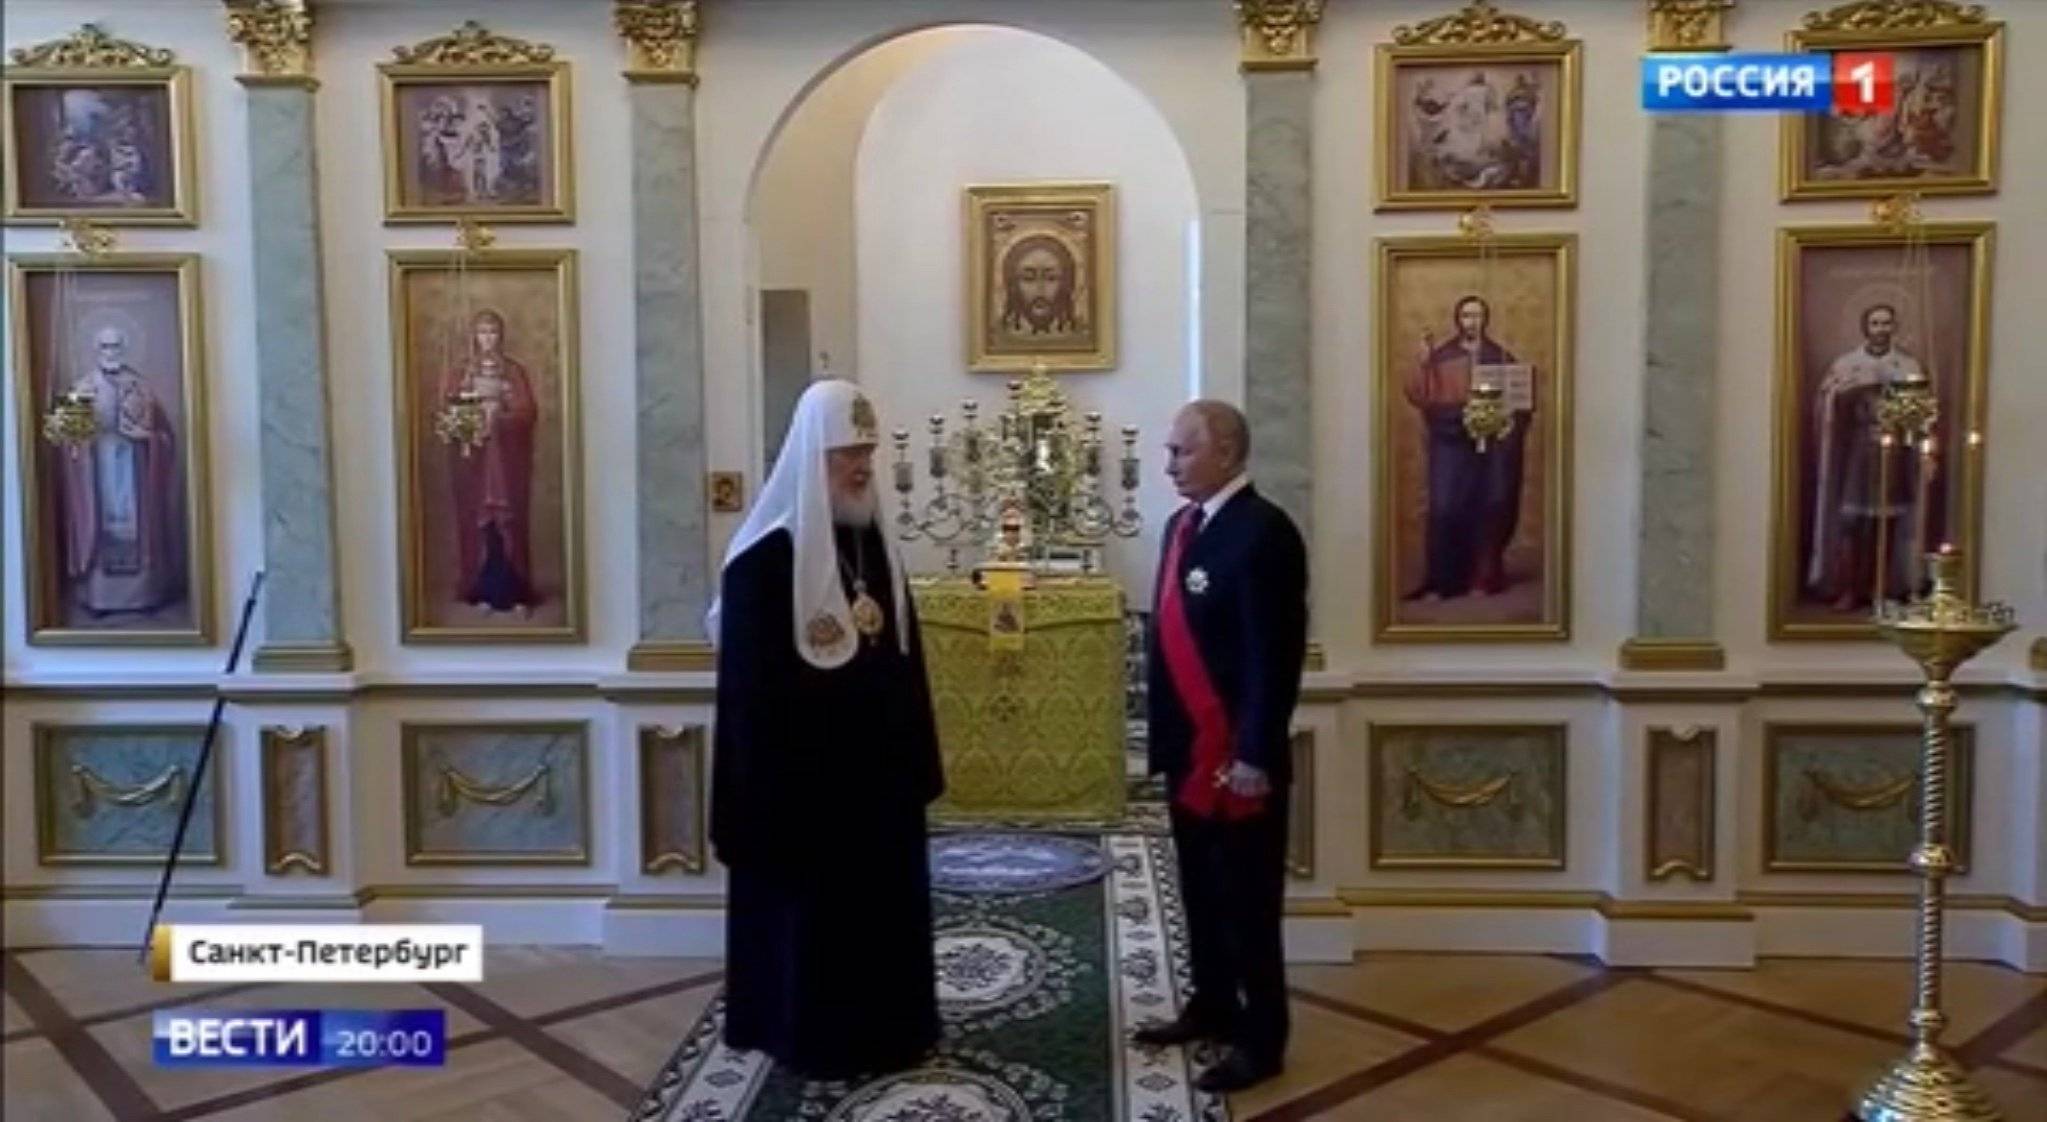 Putin i patriaracha w białym welonie i czarnej szacie. Putin ma order z czerwoną szarfą. Na ścianie - dużo ikon